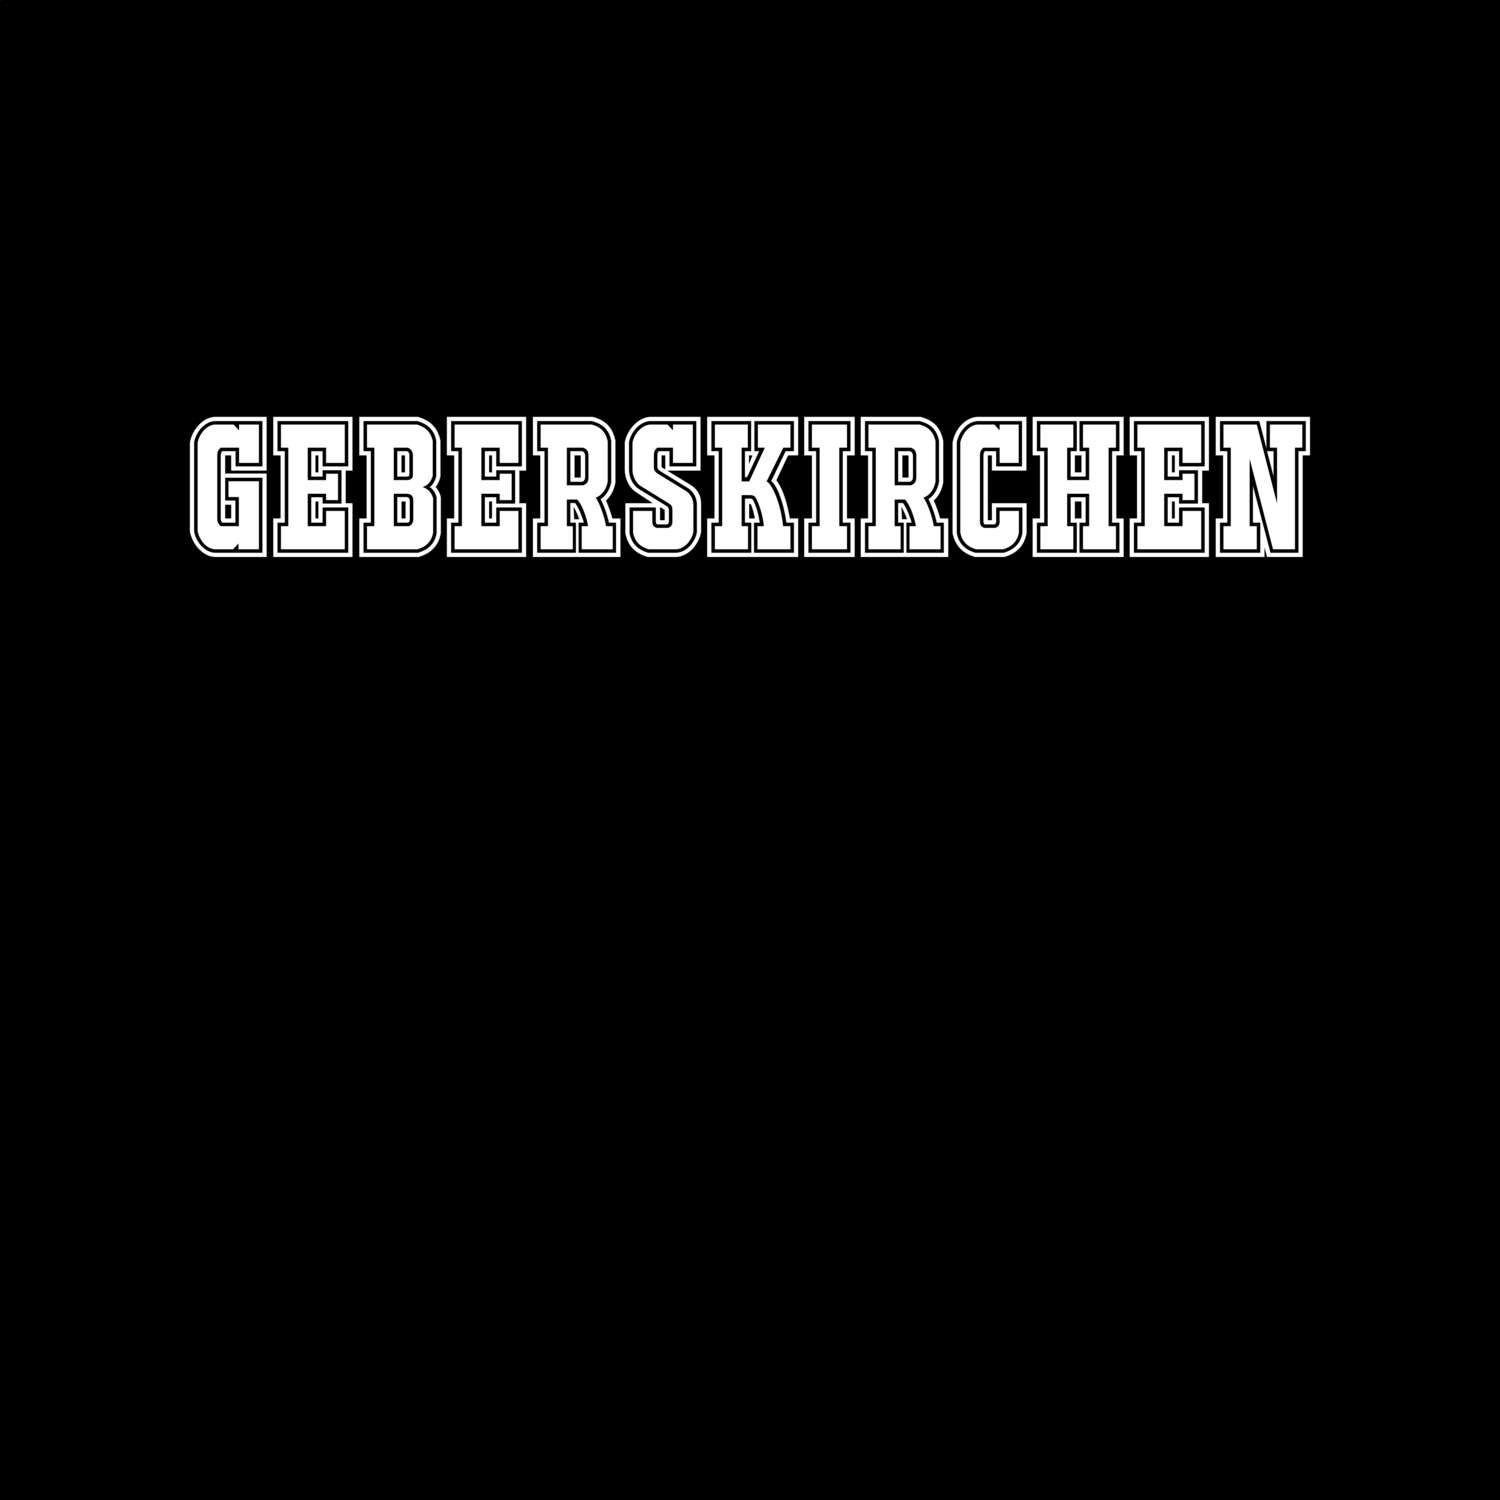 Geberskirchen T-Shirt »Classic«